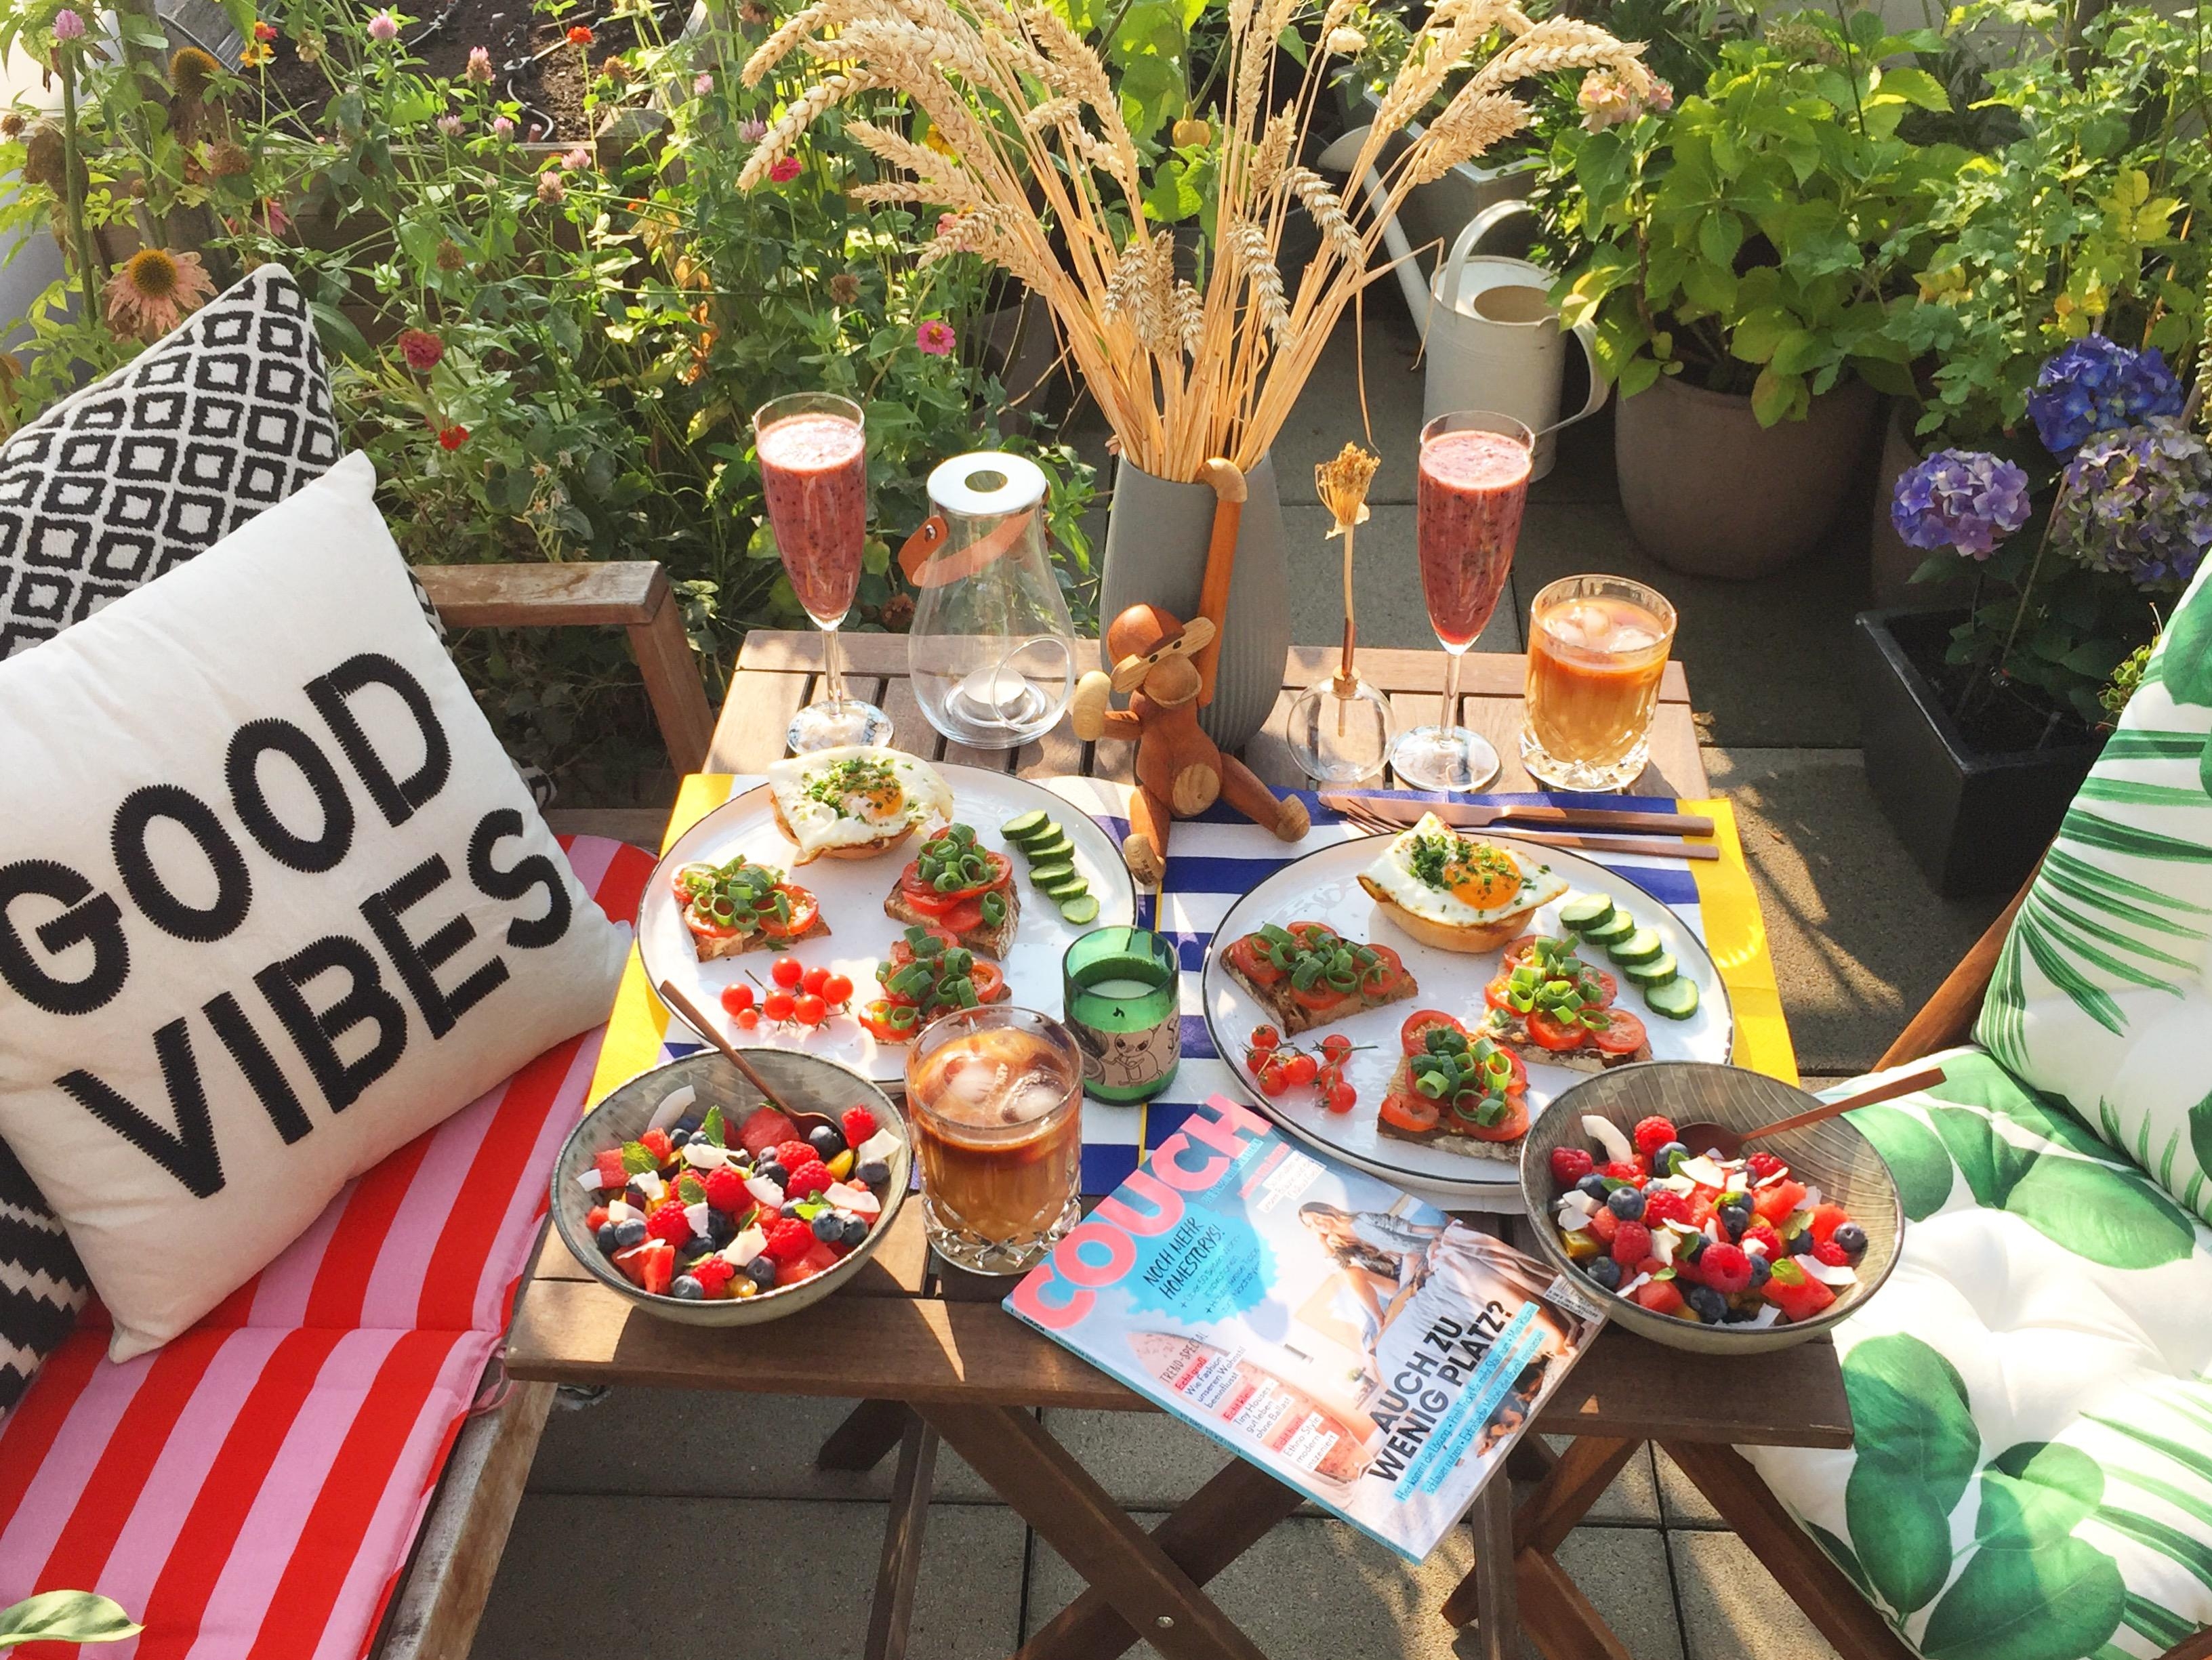 Sunday at home ❤️
#breakfast #sonntag #terrasse #couchmagazin #healthyfood #smoothie #icedlatte #goodvibes #frühstück 